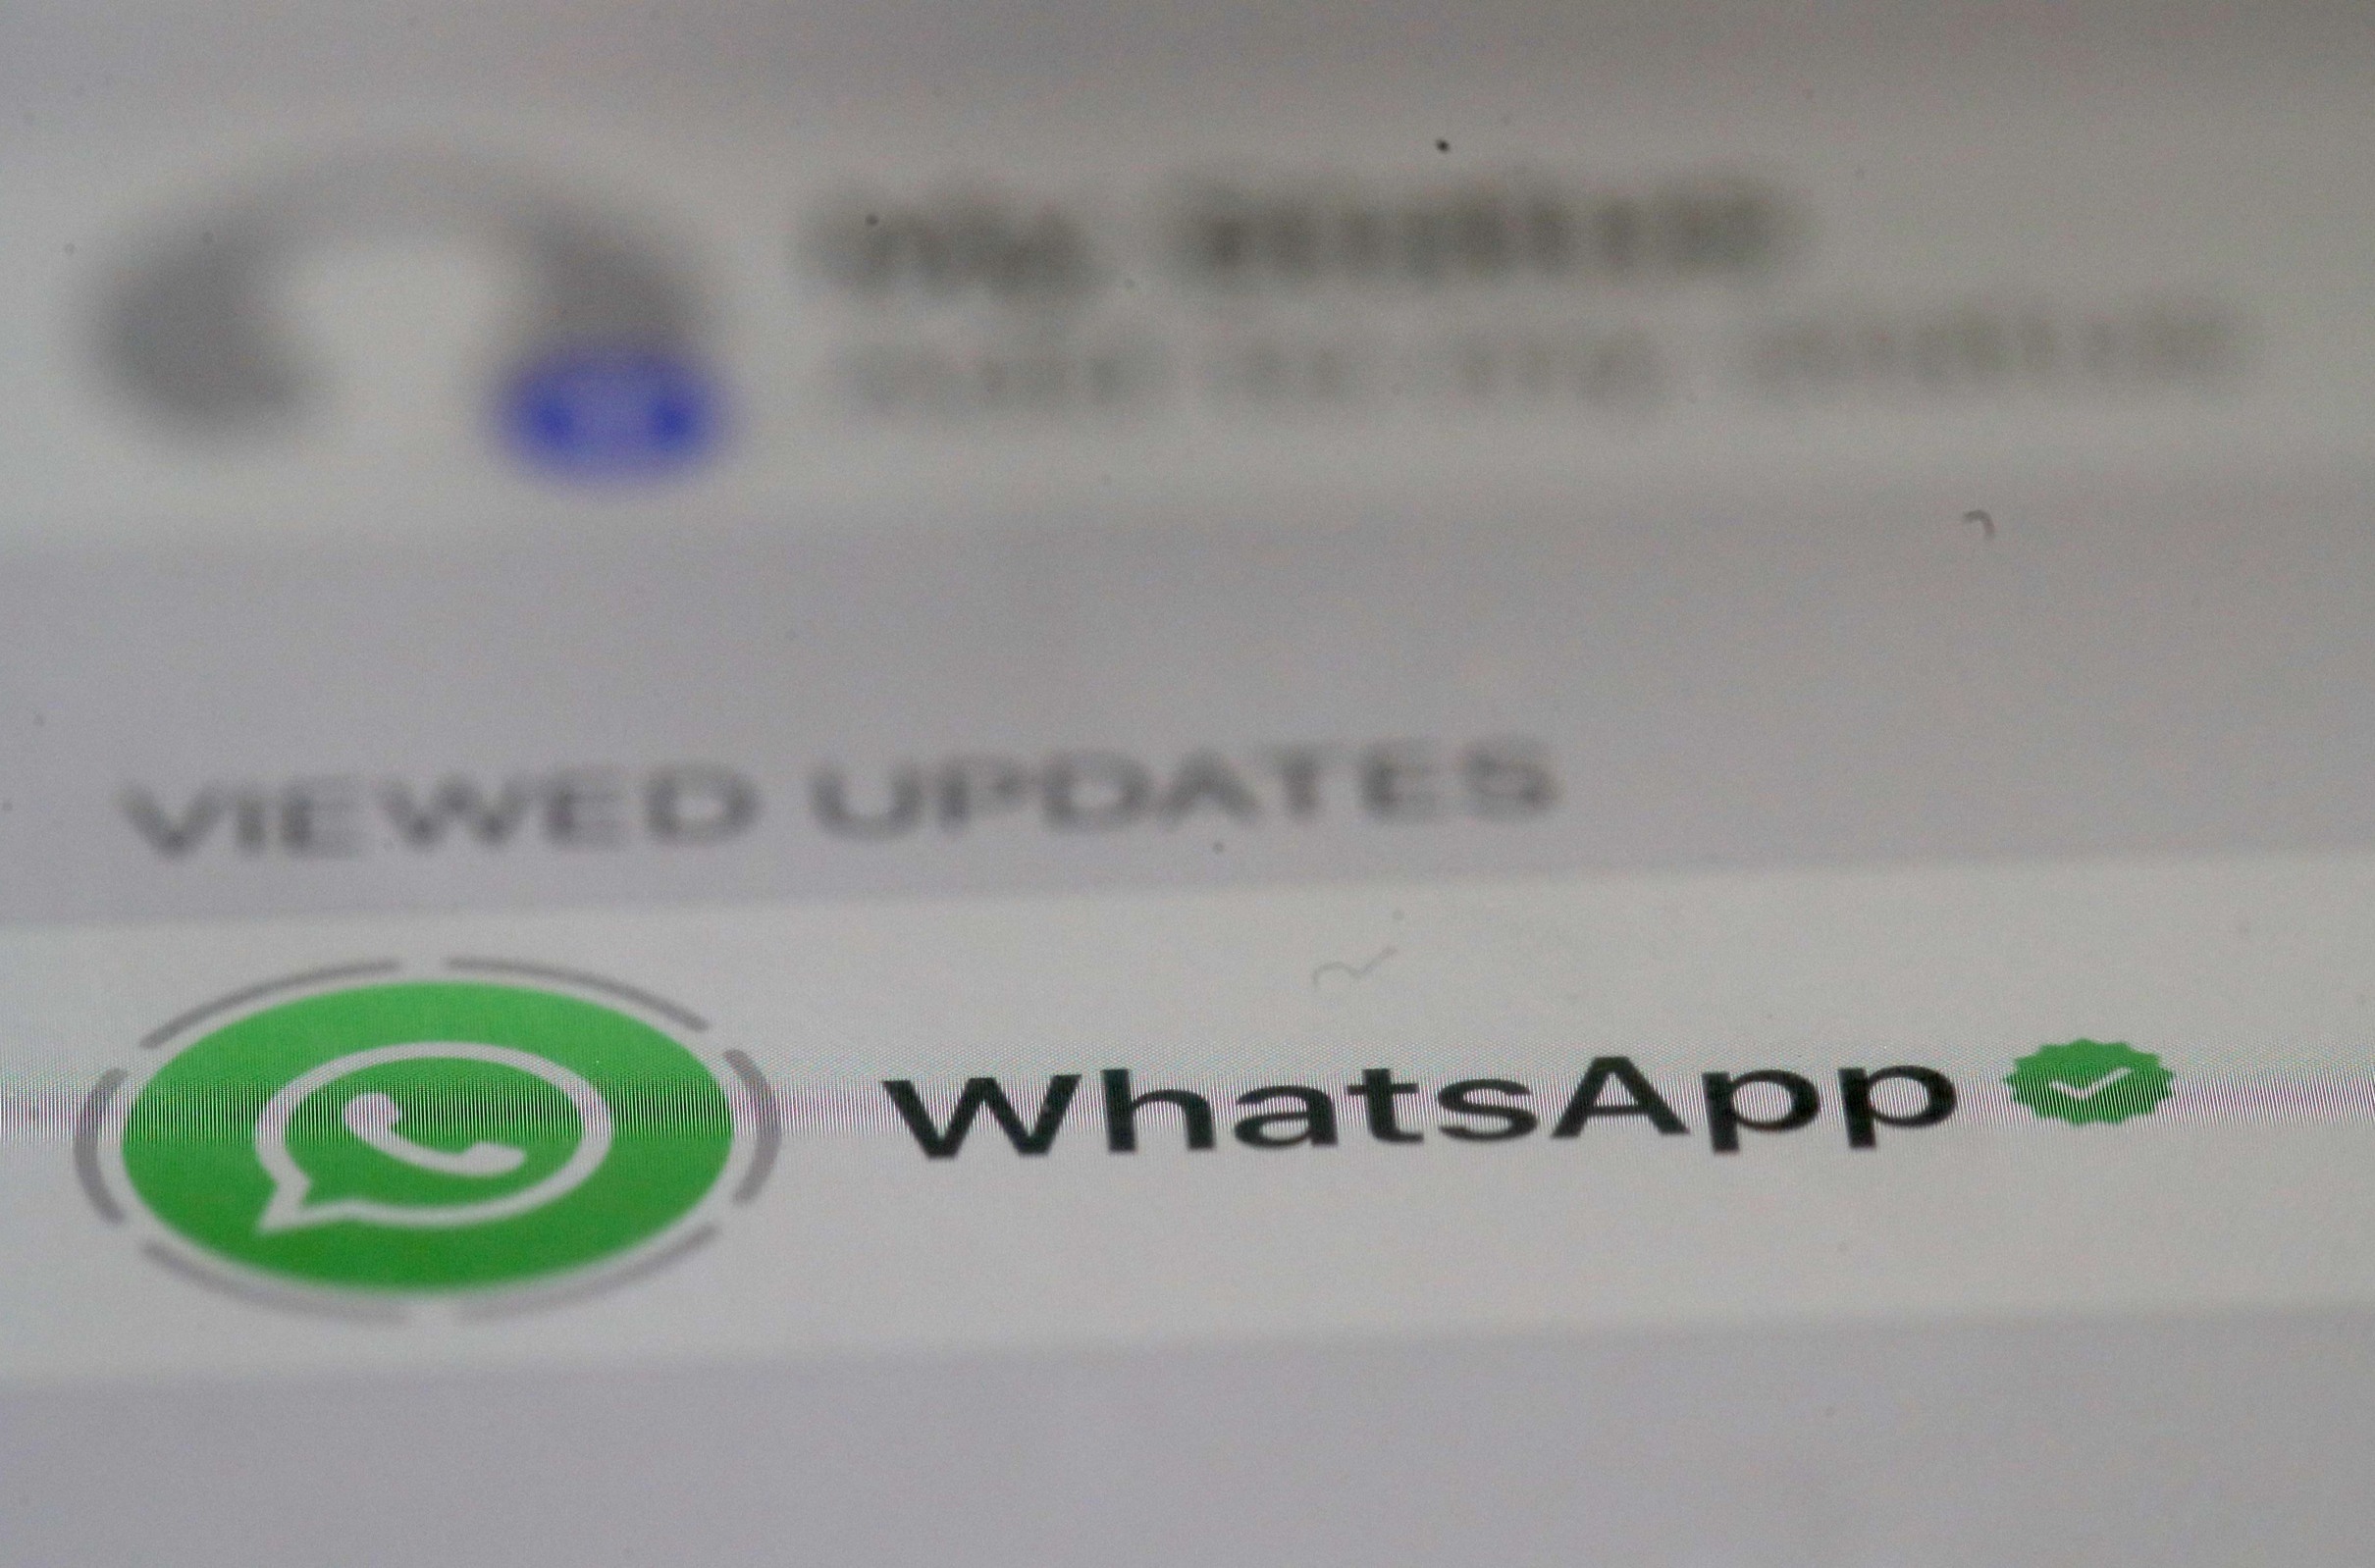 "No hubo un sólo día en los diez años de WhatsApp en el que este servicio haya sido seguro", dijo Durov (Imagen: AFP).